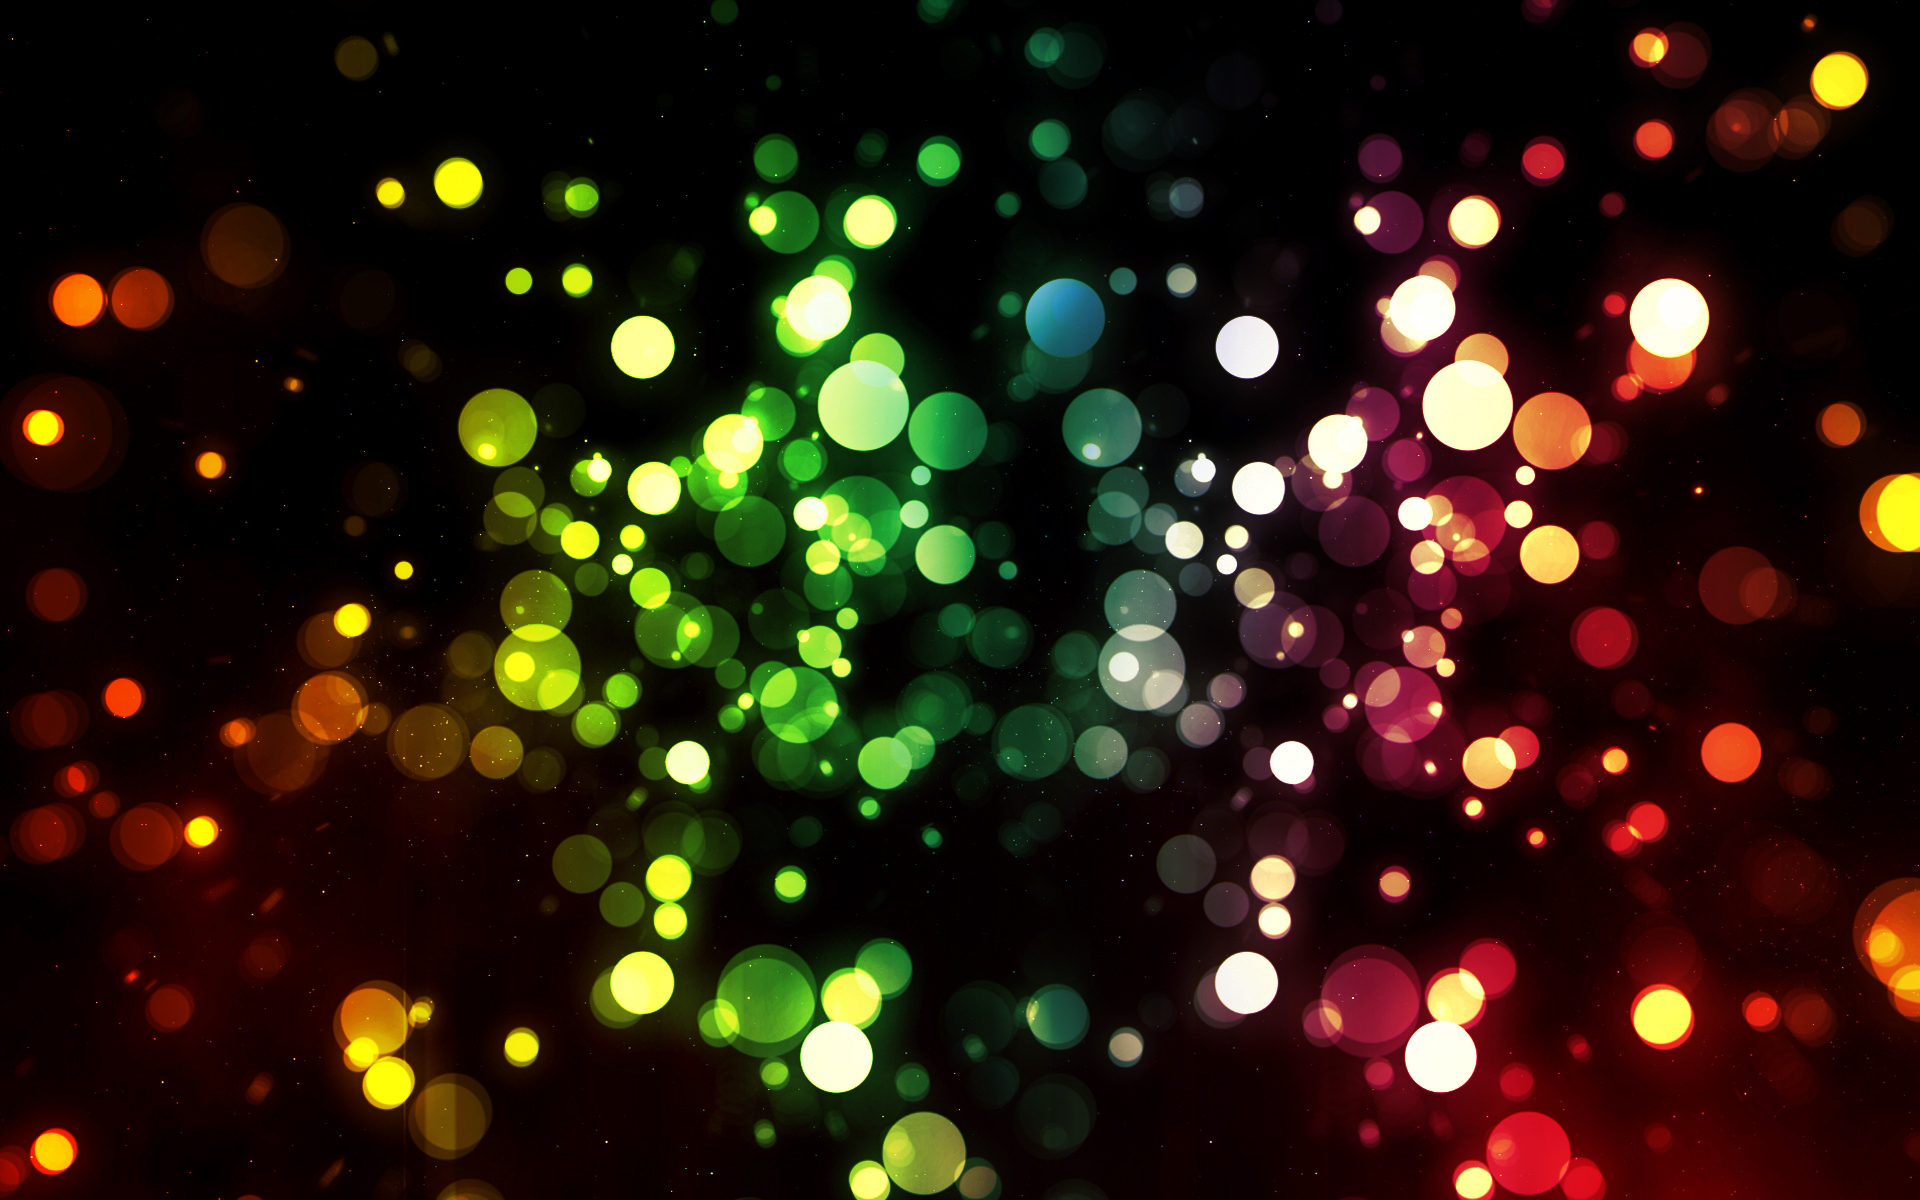 Desktop Backgrounds on Pinterest | Sparkles Background, Pink ...